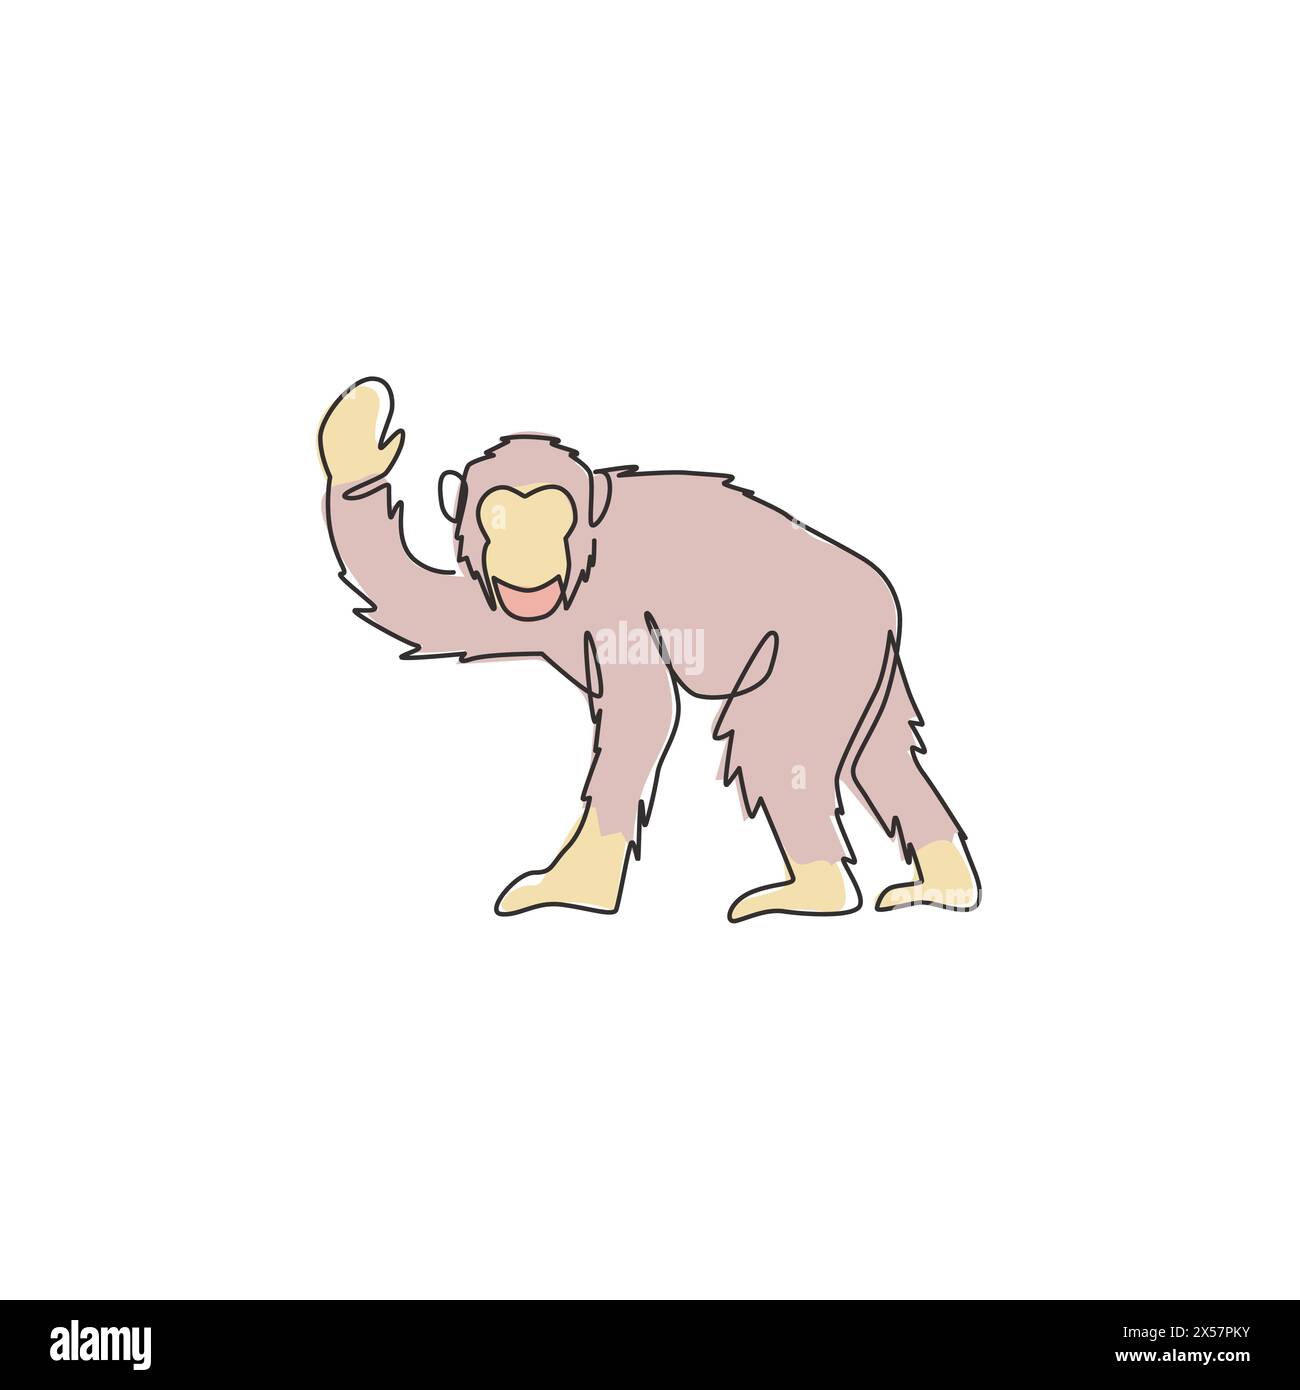 Disegno a linea singola continua di uno scimpanzé da salto per l'identità del logo nazionale dello zoo. Adorabile mascotte animale primate per icona di spettacolo circense. Illustrazione Vettoriale